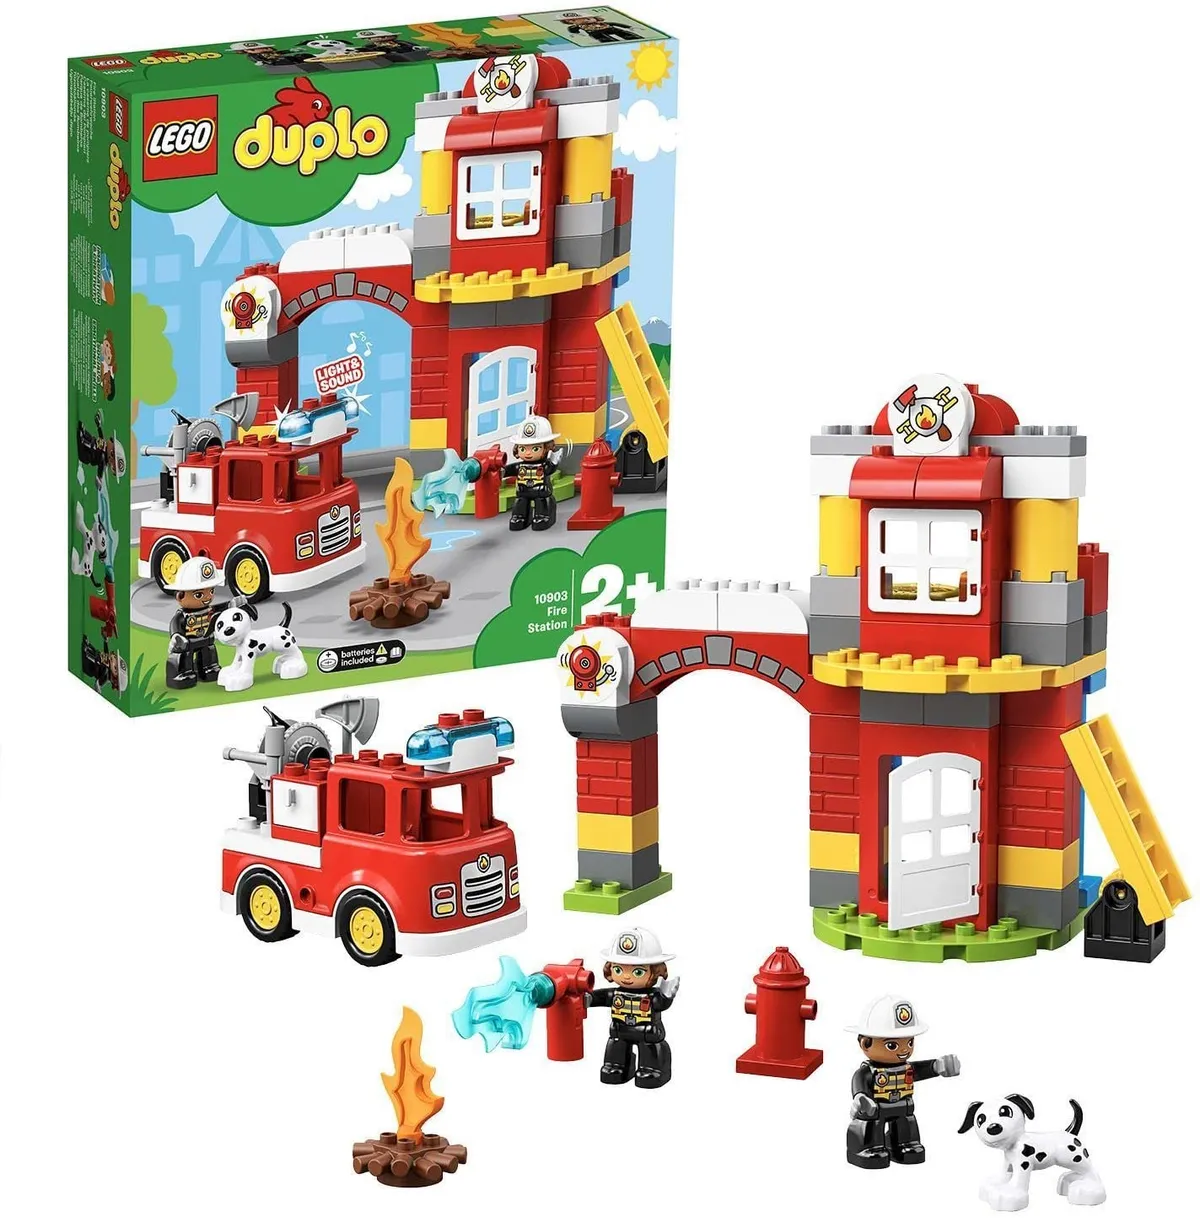 Lego Duplo Fire Station Set